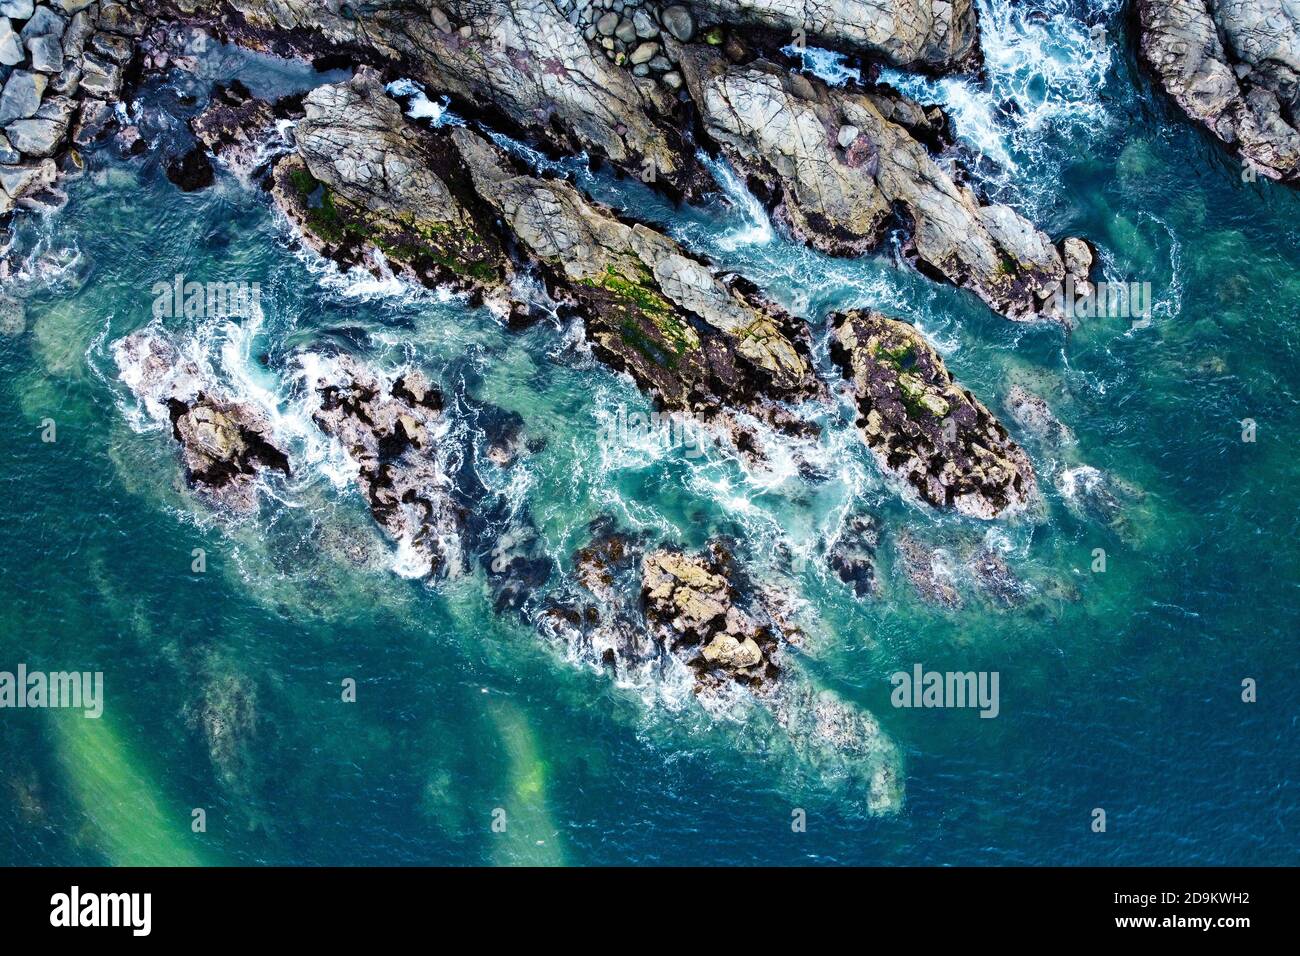 Vista aerea delle onde dell'oceano e della costa rocciosa. Pericolo onde di mare schiacciamento di enormi rocce con spray e schiuma. Valparaiso, Cile. Foto Stock